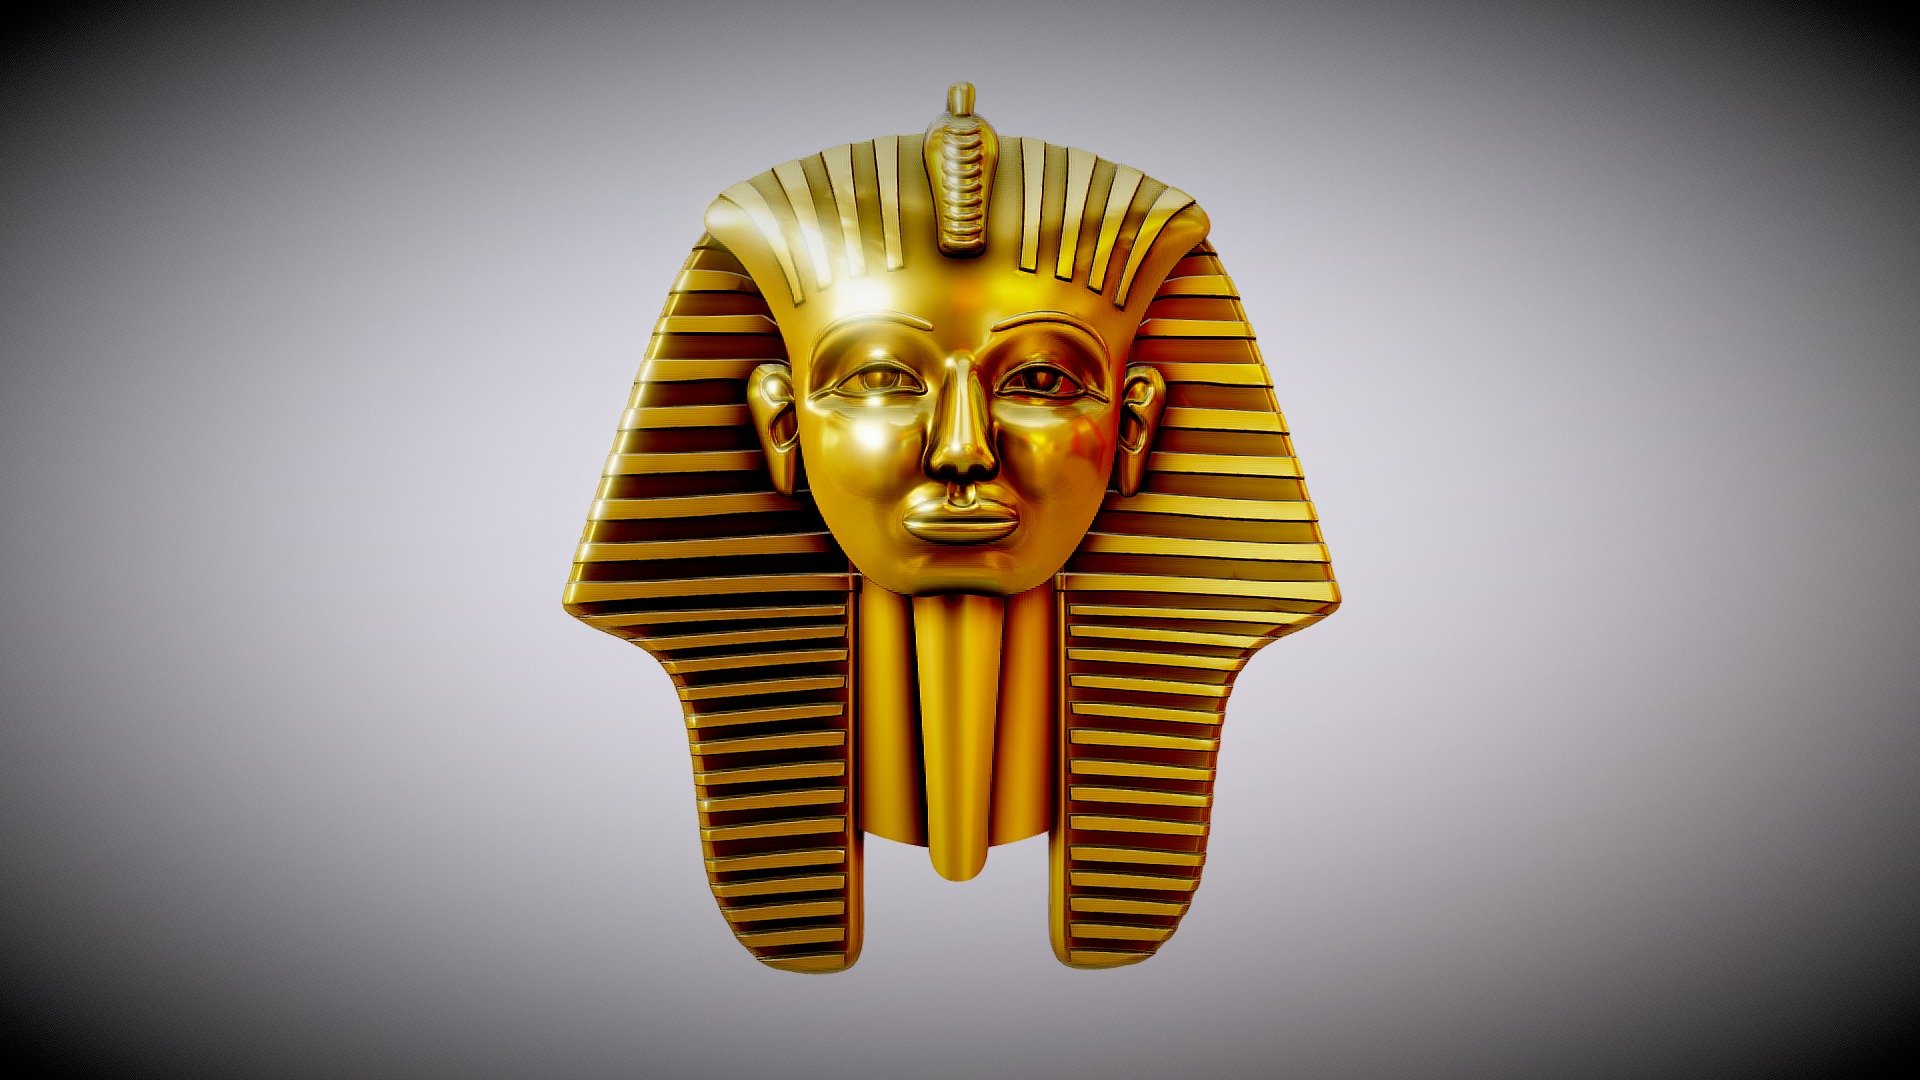 Egyptian inspired pendant - Pharaoh - 3D model by Alolkoy 3d model